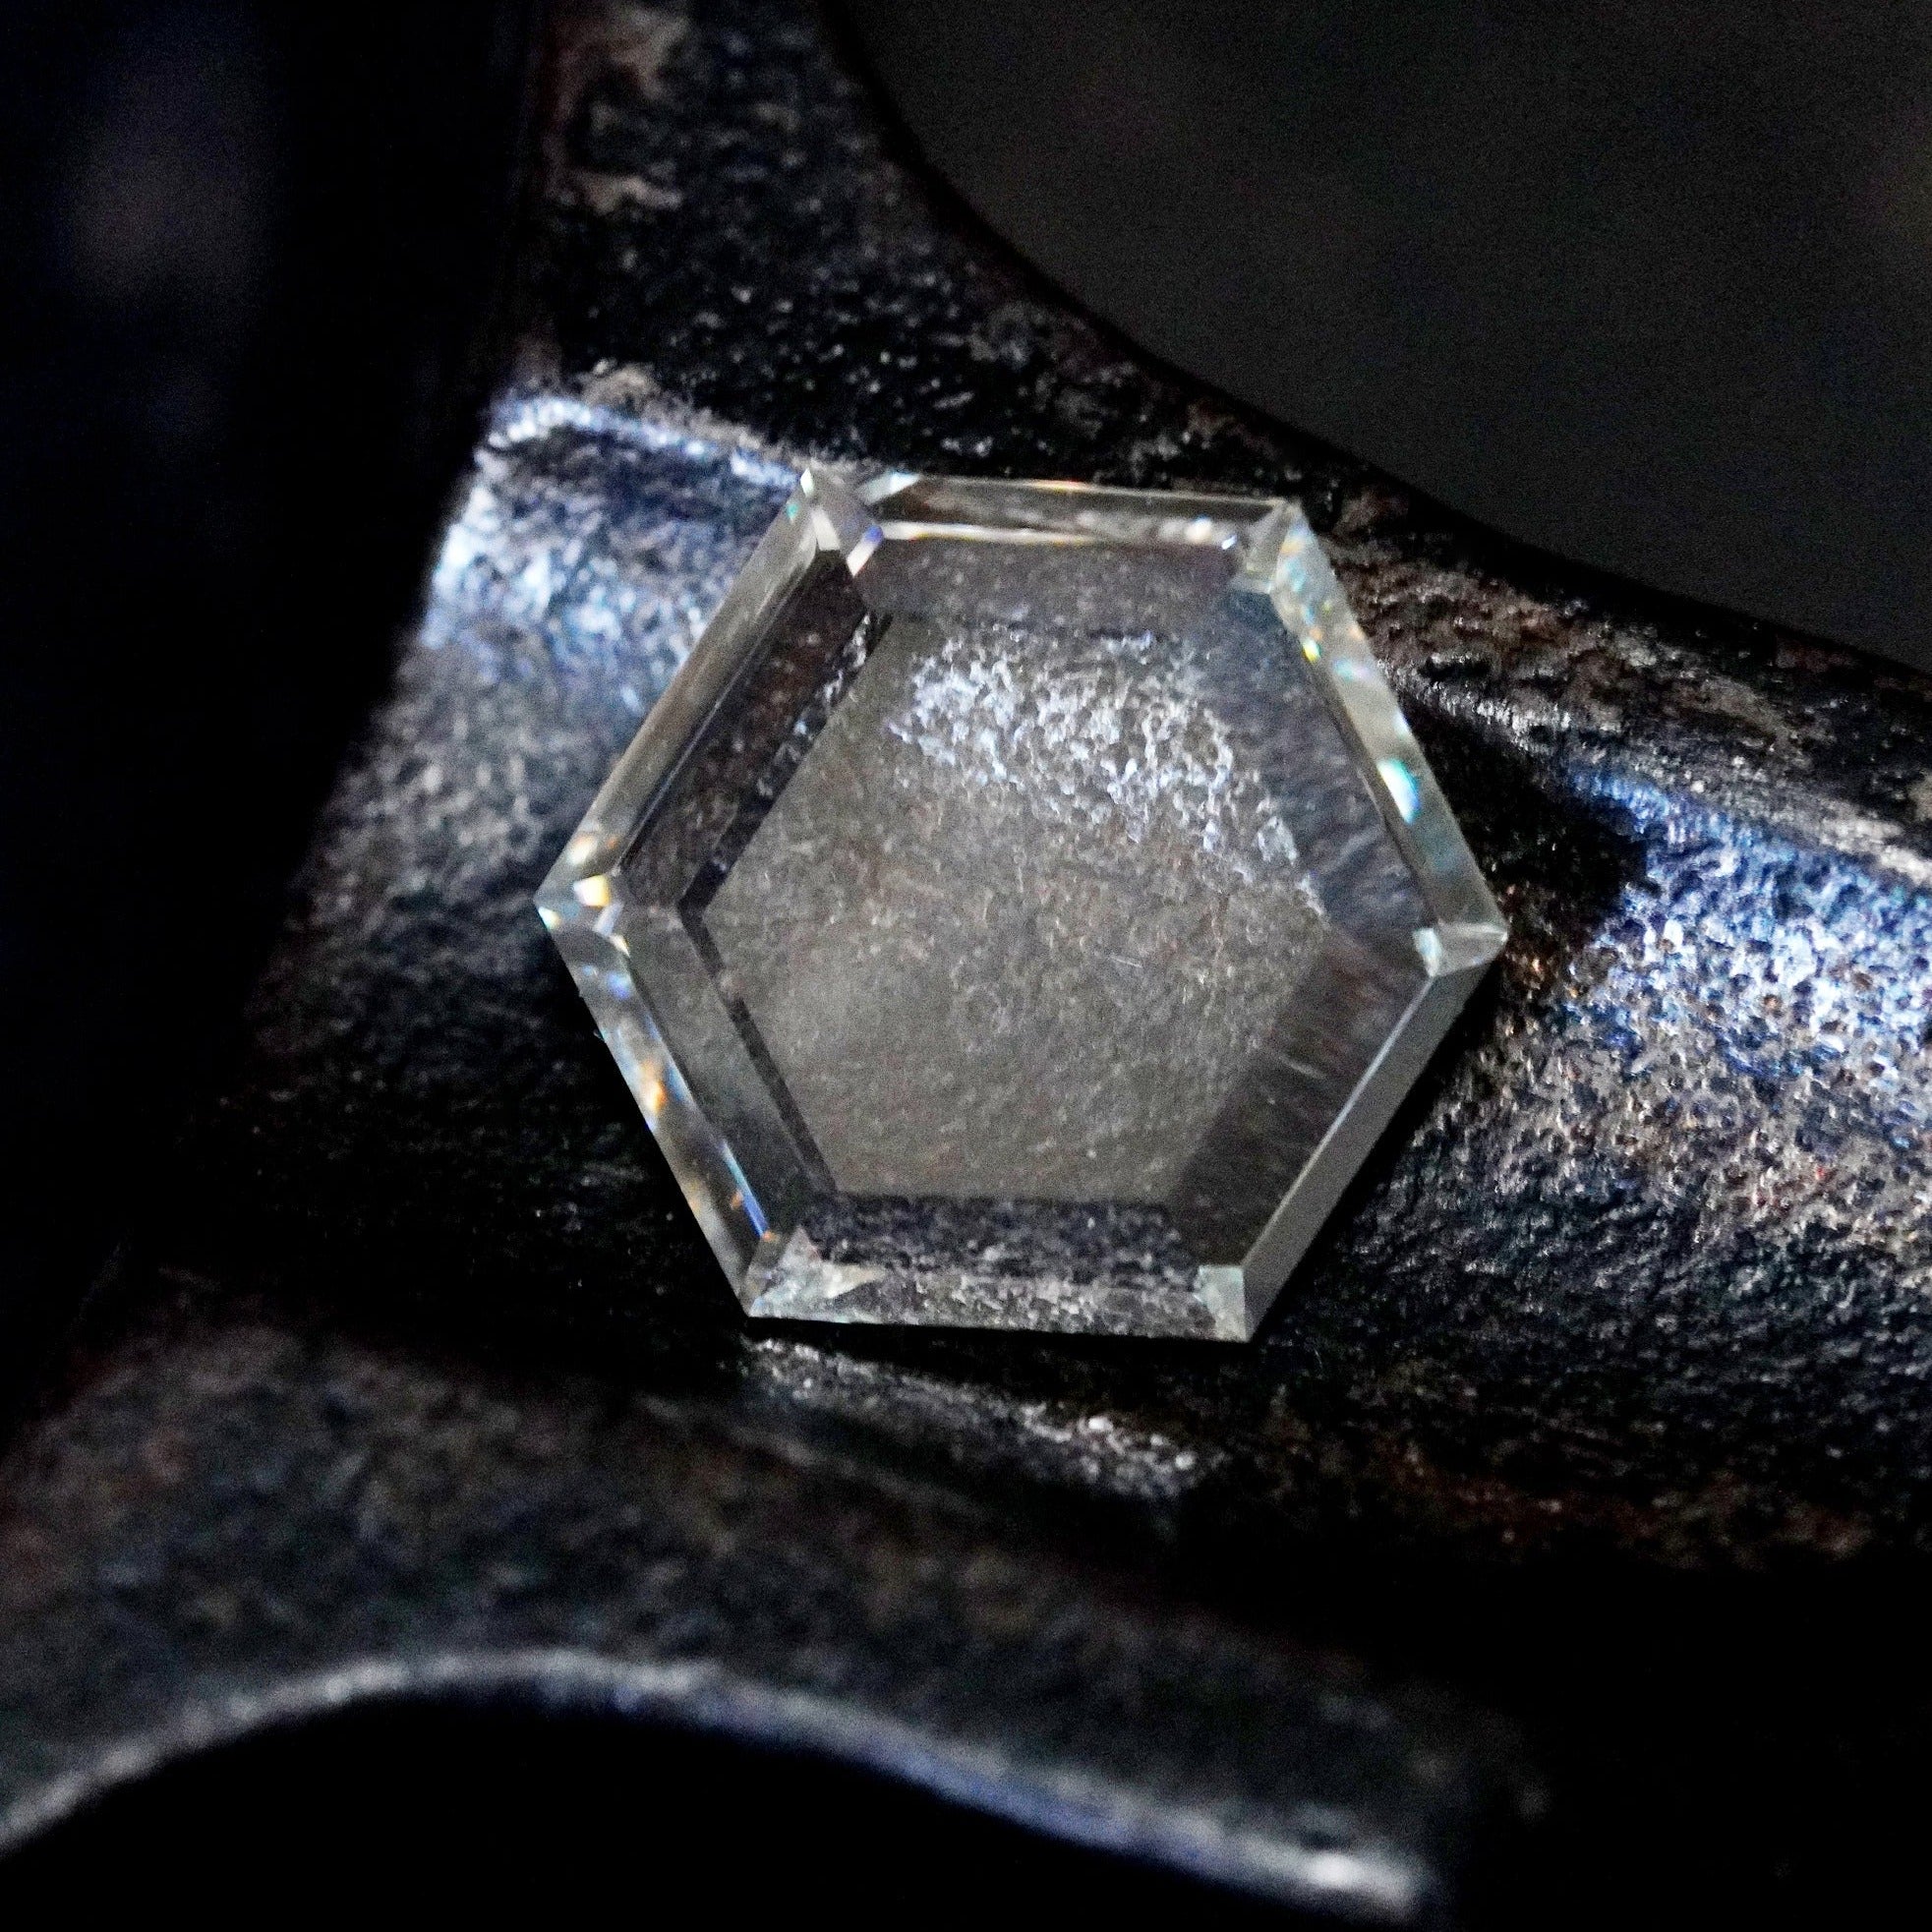 Victorian Inspired 3.66-CT Hexagonal Diamond Ring